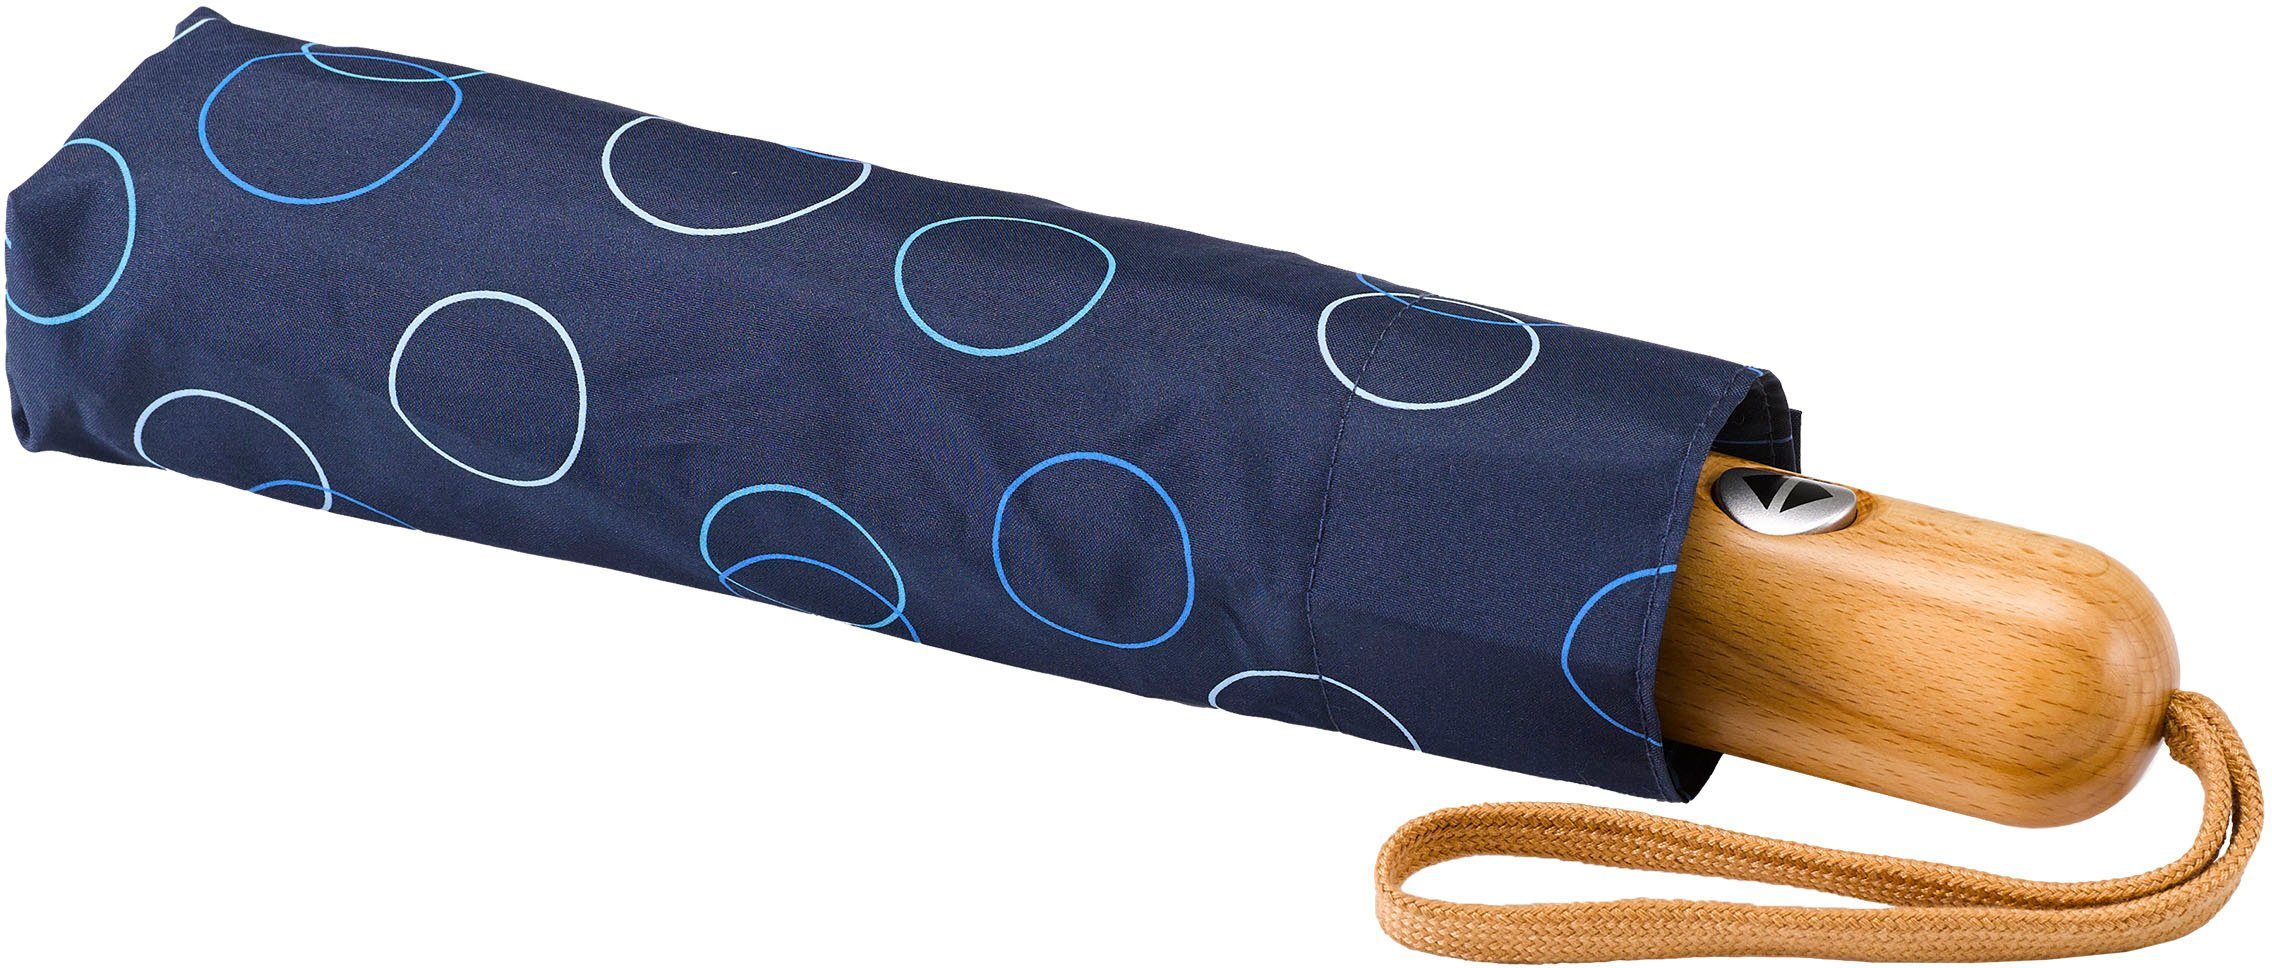 blau Umwelt-Taschenschirm, marine, EuroSCHIRM® Taschenregenschirm Kreise